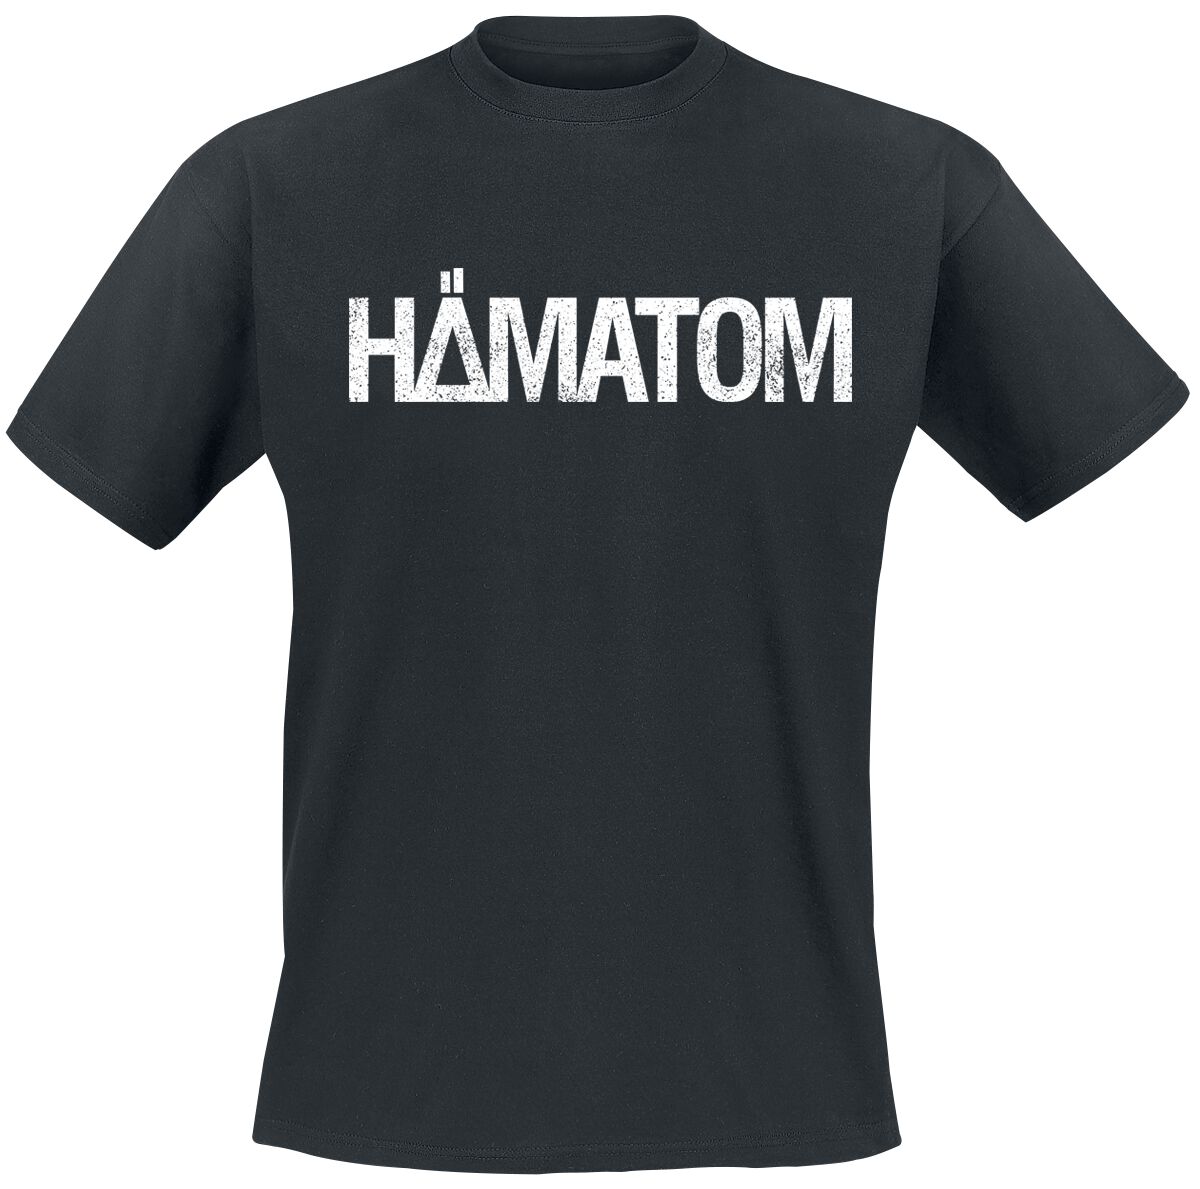 Hämatom T-Shirt - Ich hasse euch alle - S bis M - für Männer - Größe S - schwarz  - Lizenziertes Merchandise!